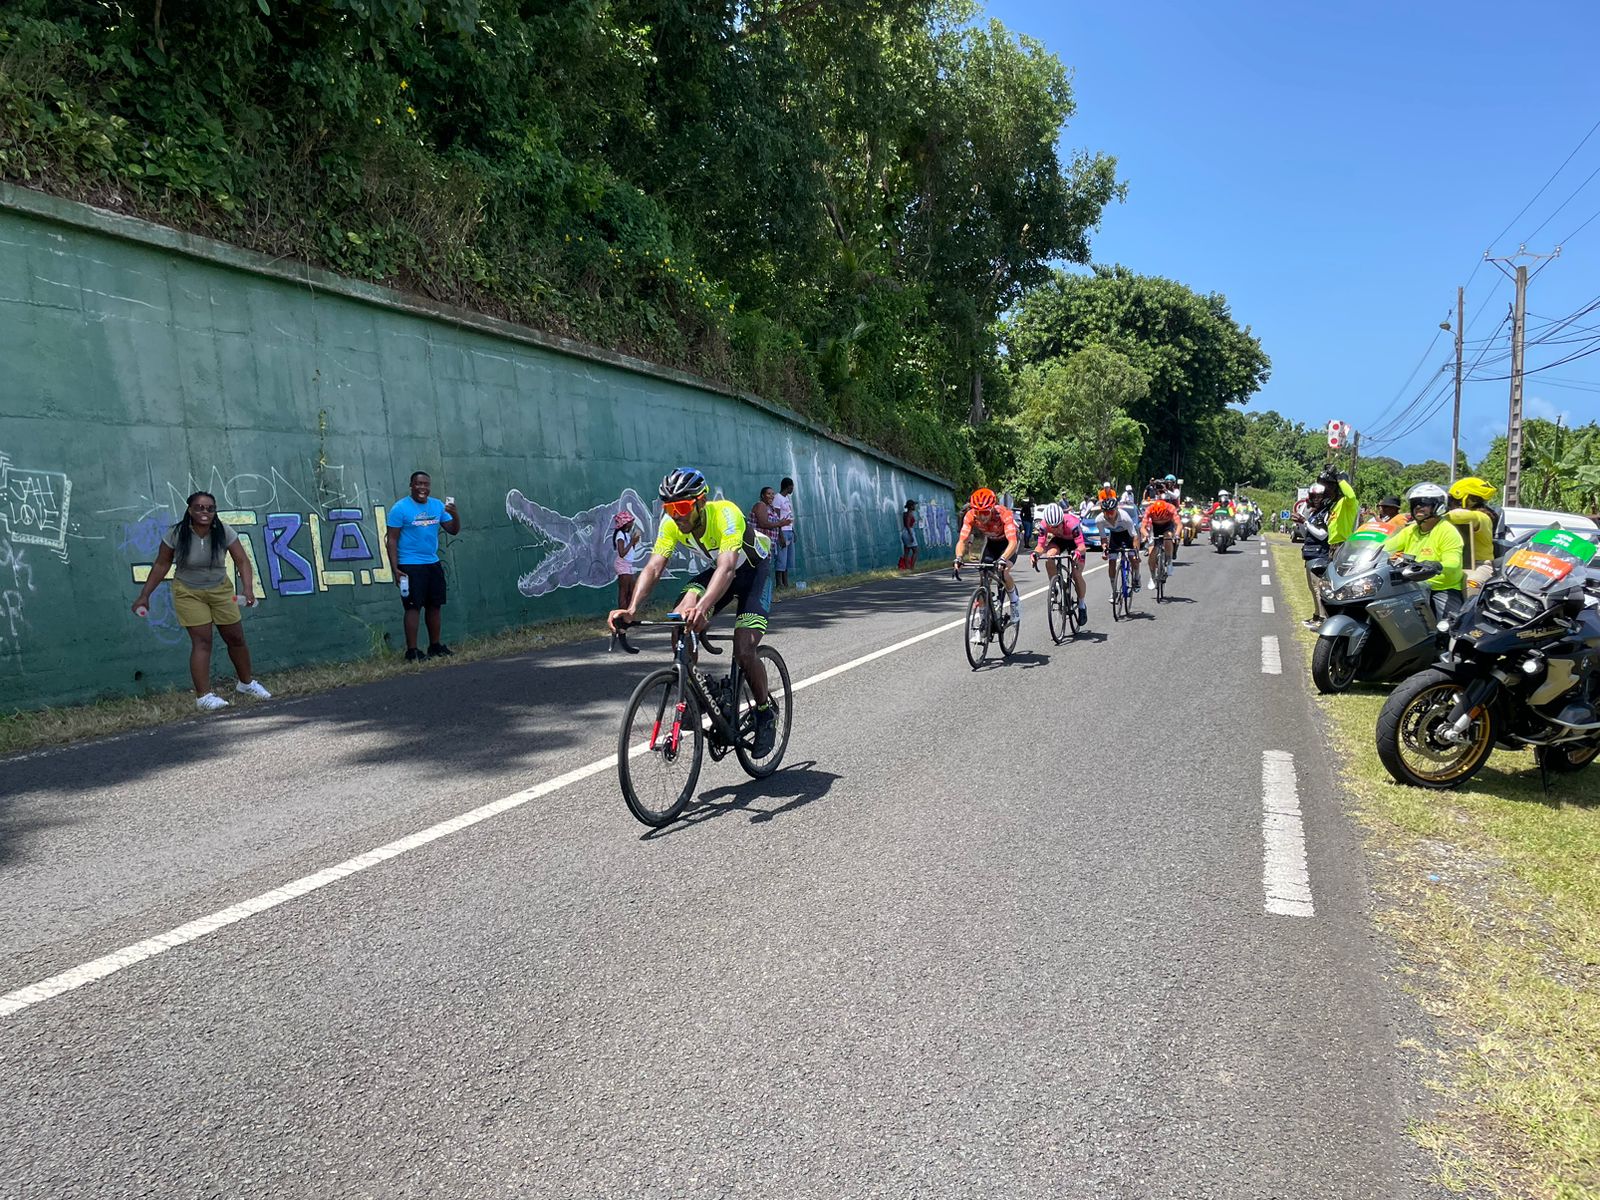     4e étape du Tour Cycliste de Guadeloupe (Saint-François / Sainte-Anne) : retour dans la plaine

